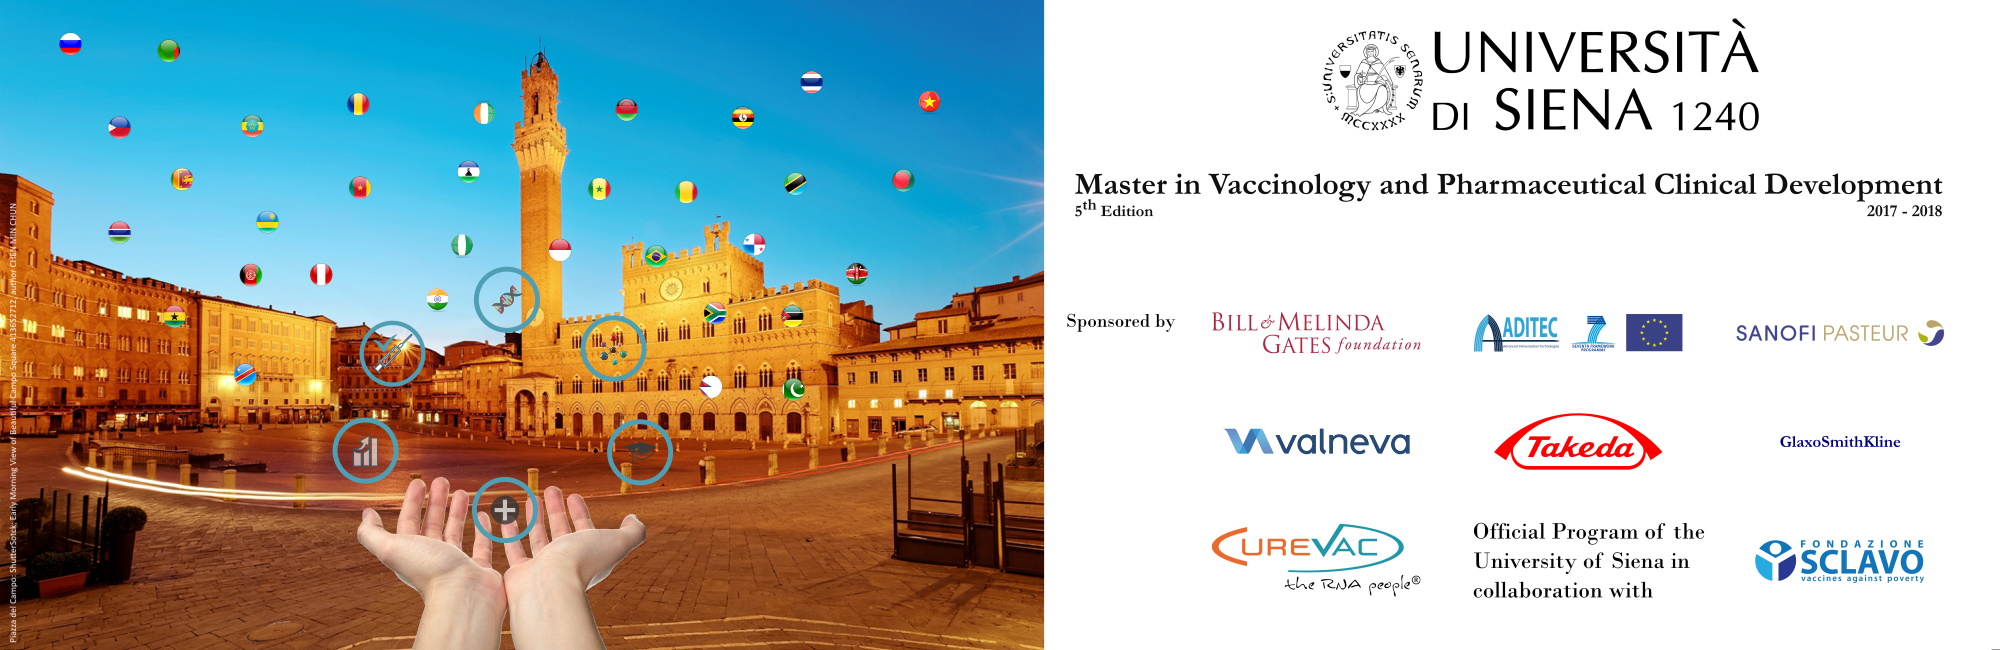 Master in Vaccinologia e Sviluppo Clinico Farmaceutico V edizione